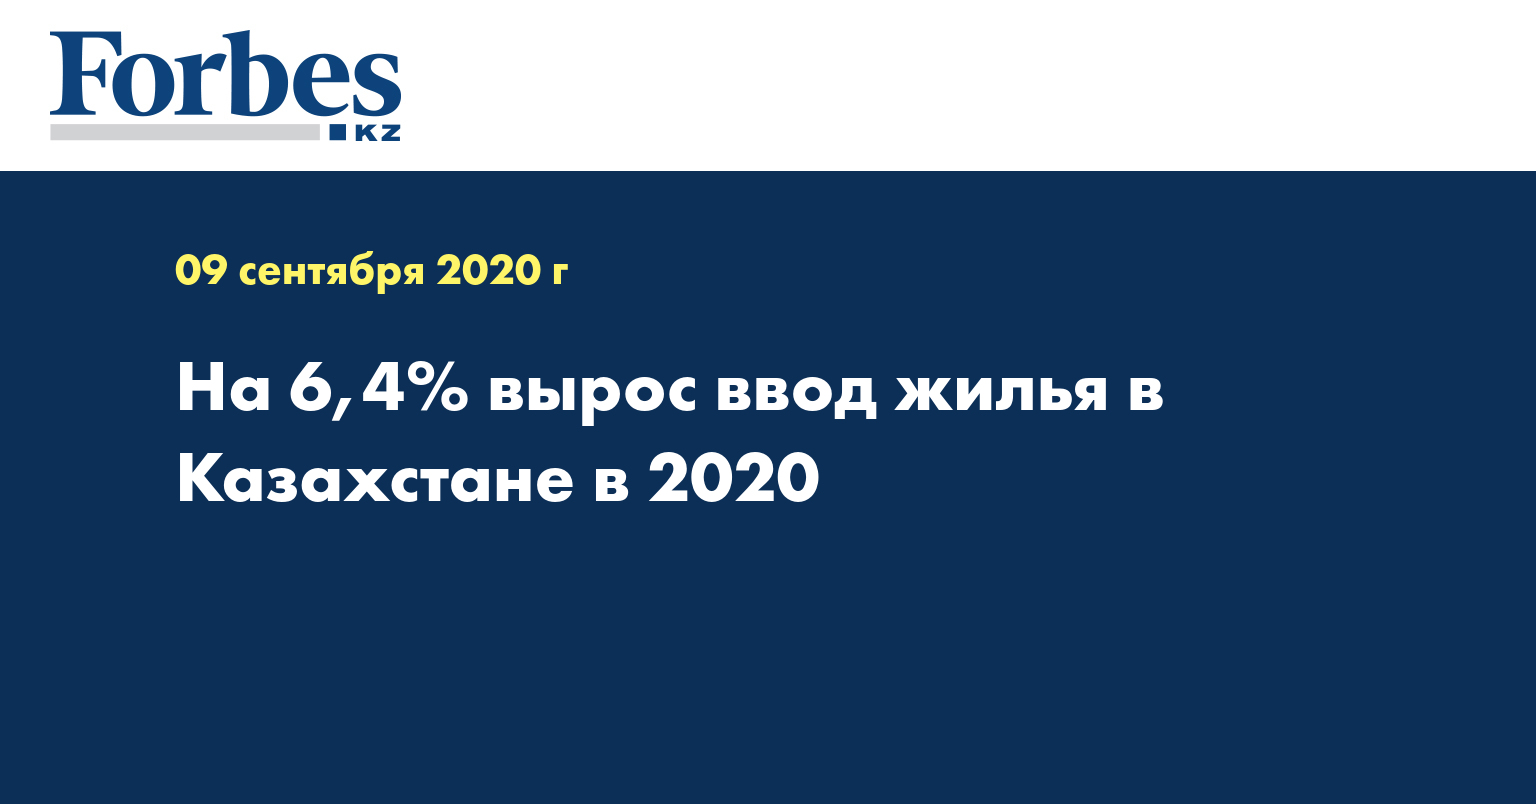  На 6,4%  вырос ввод жилья в Казахстане в 2020 